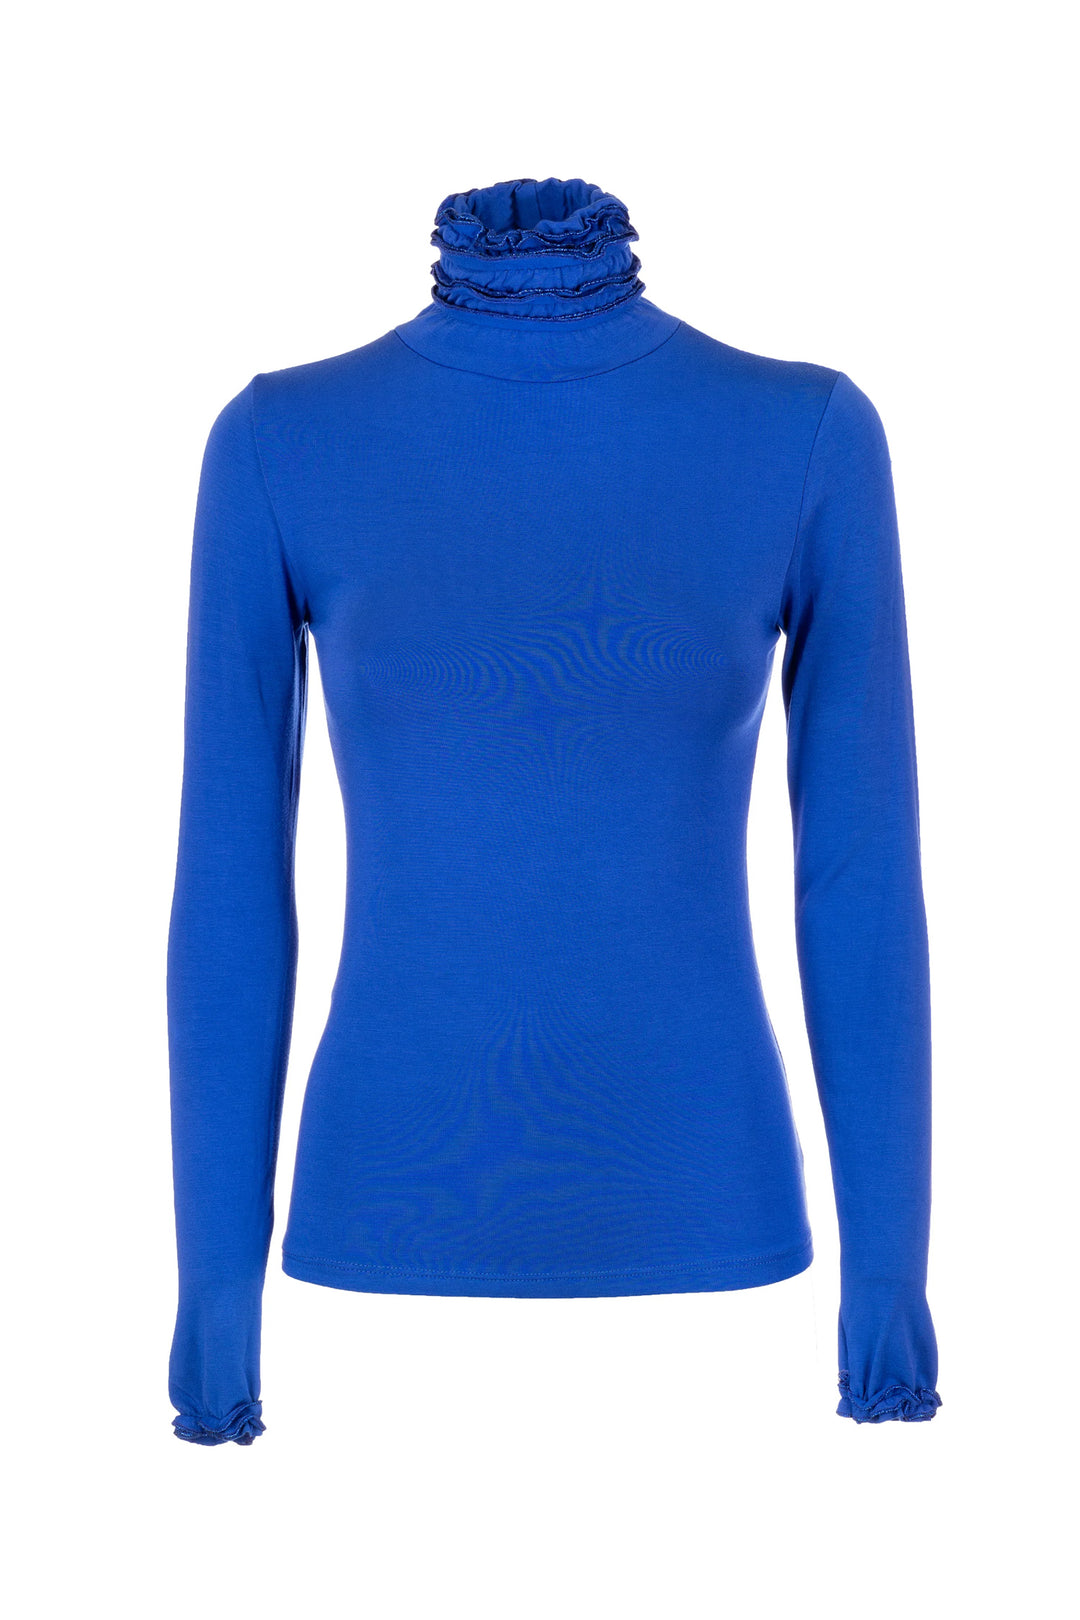 FRACOMINA Top slim bluette in jersey stretch con collo alto con rouches - Mancinelli 1954